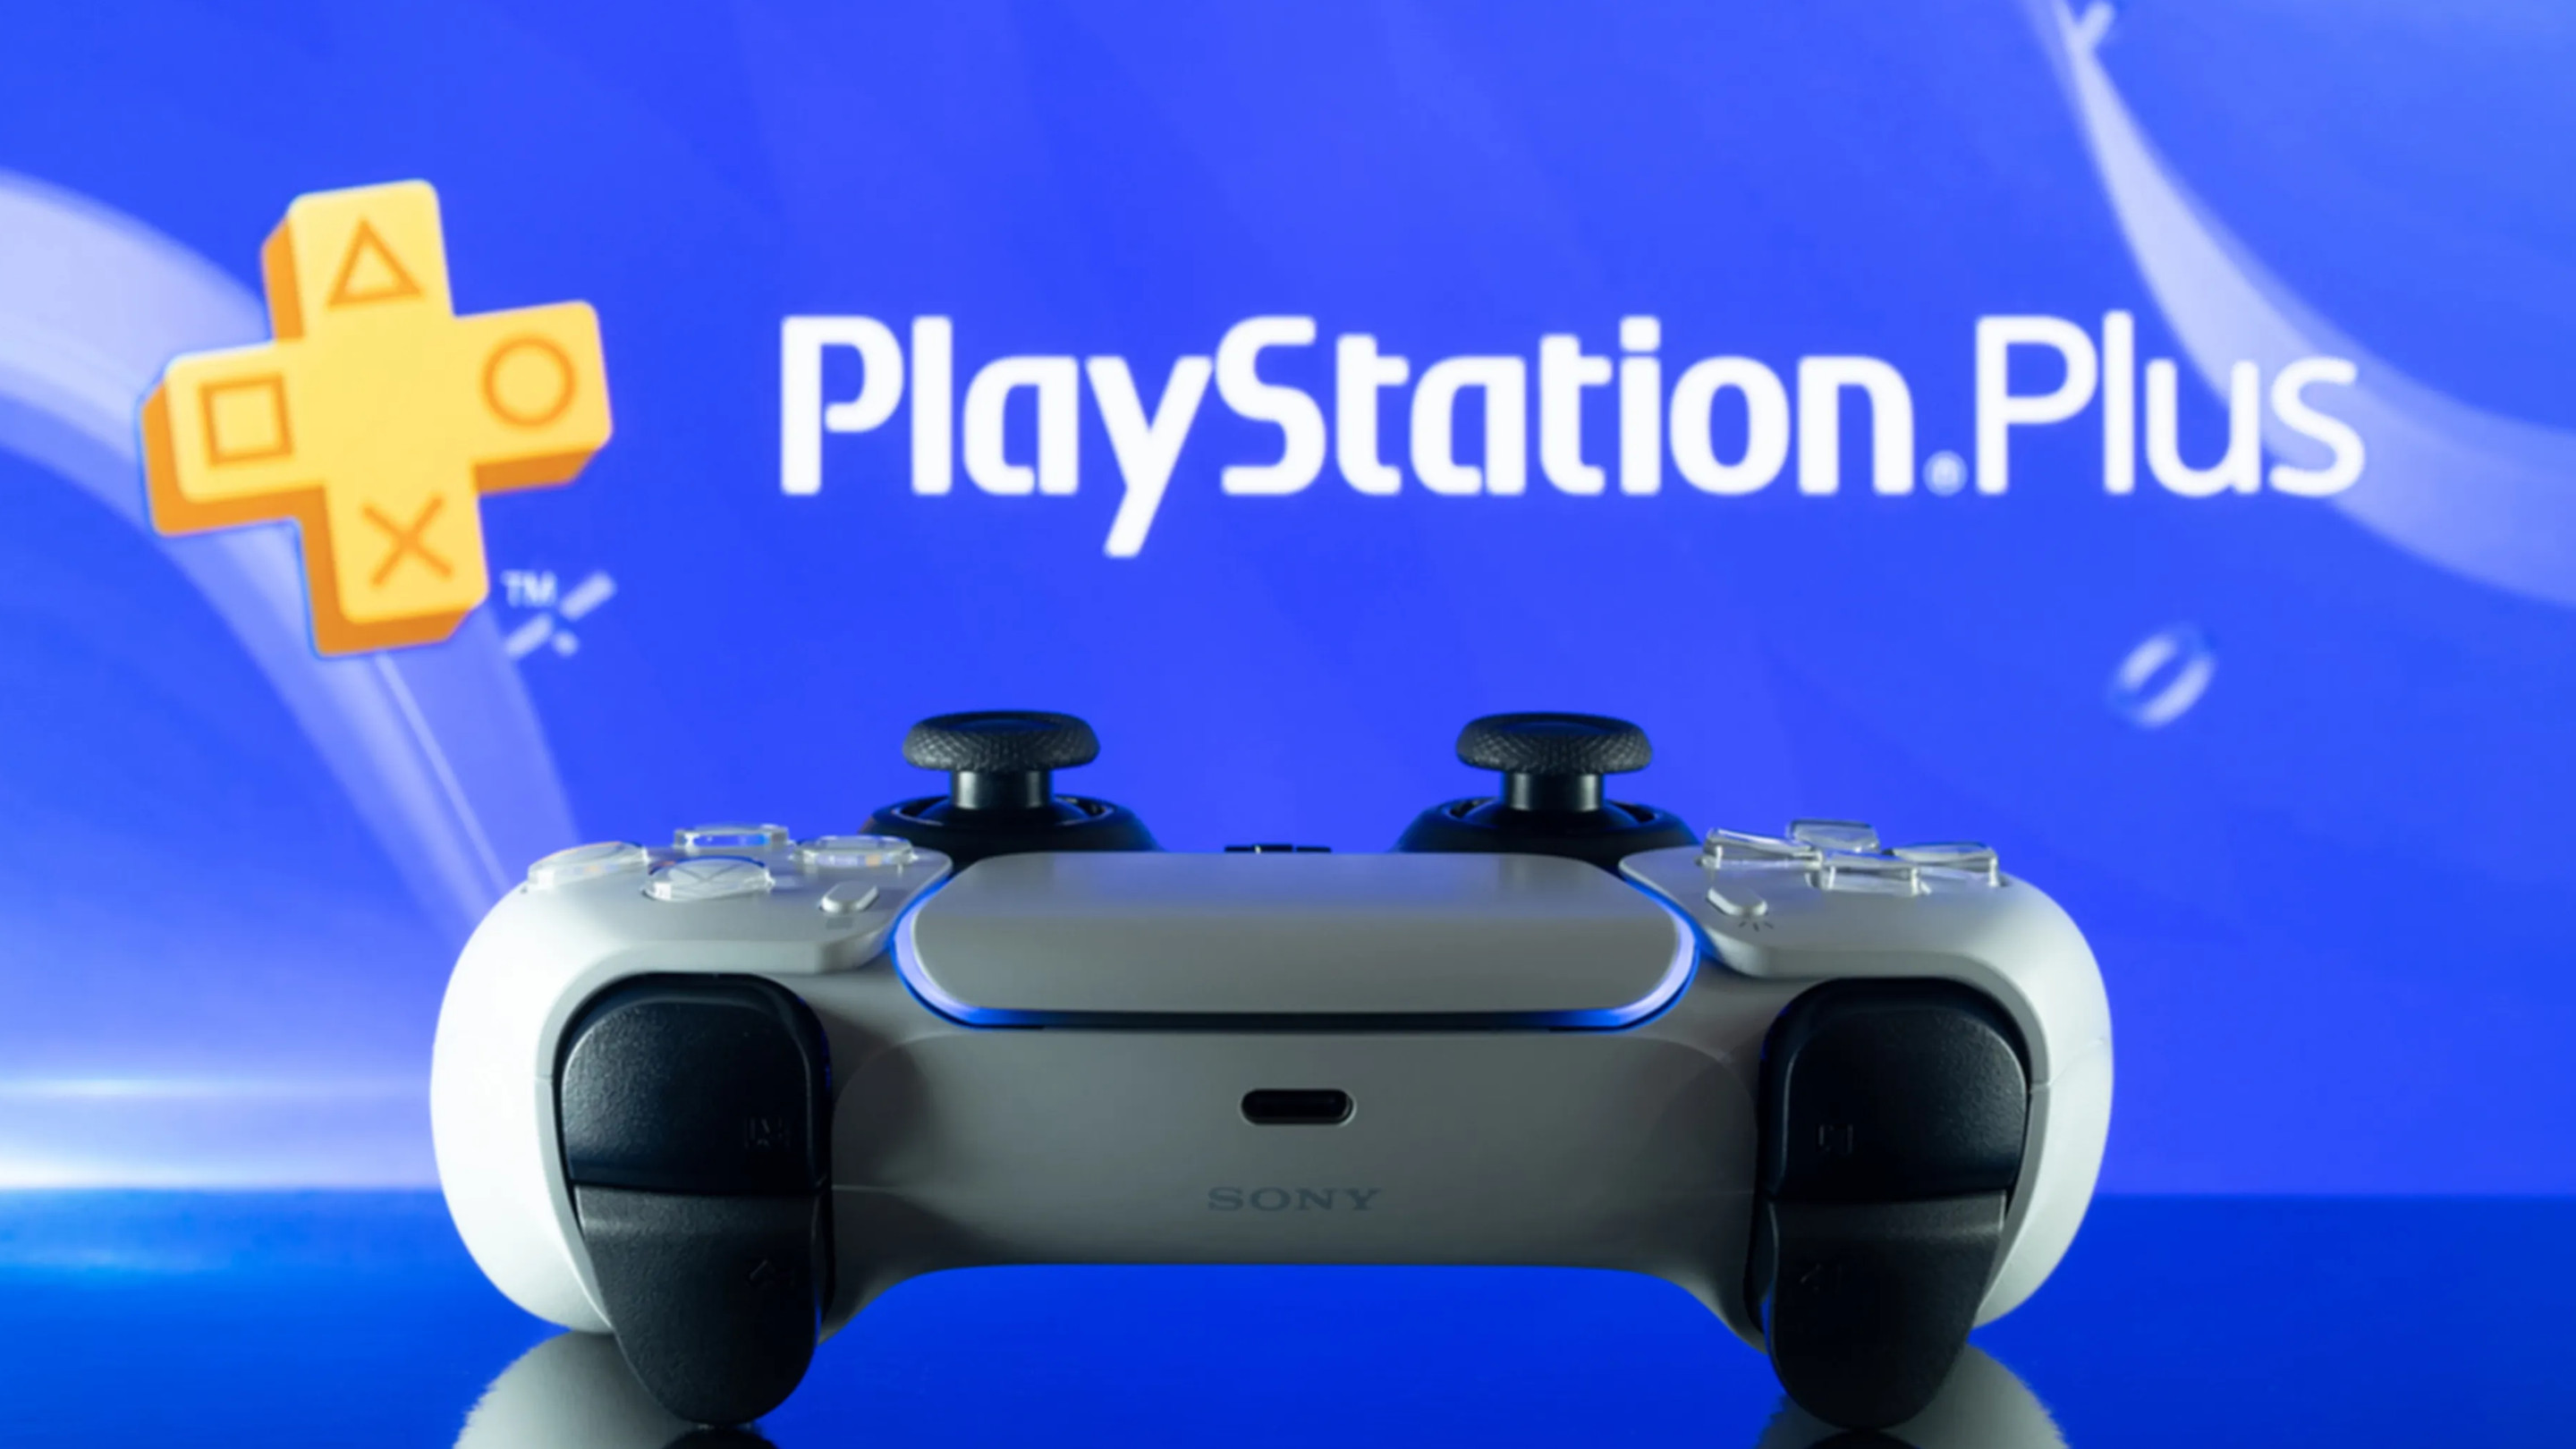 Las suscripciones anuales a PlayStation Plus subirán de precio a